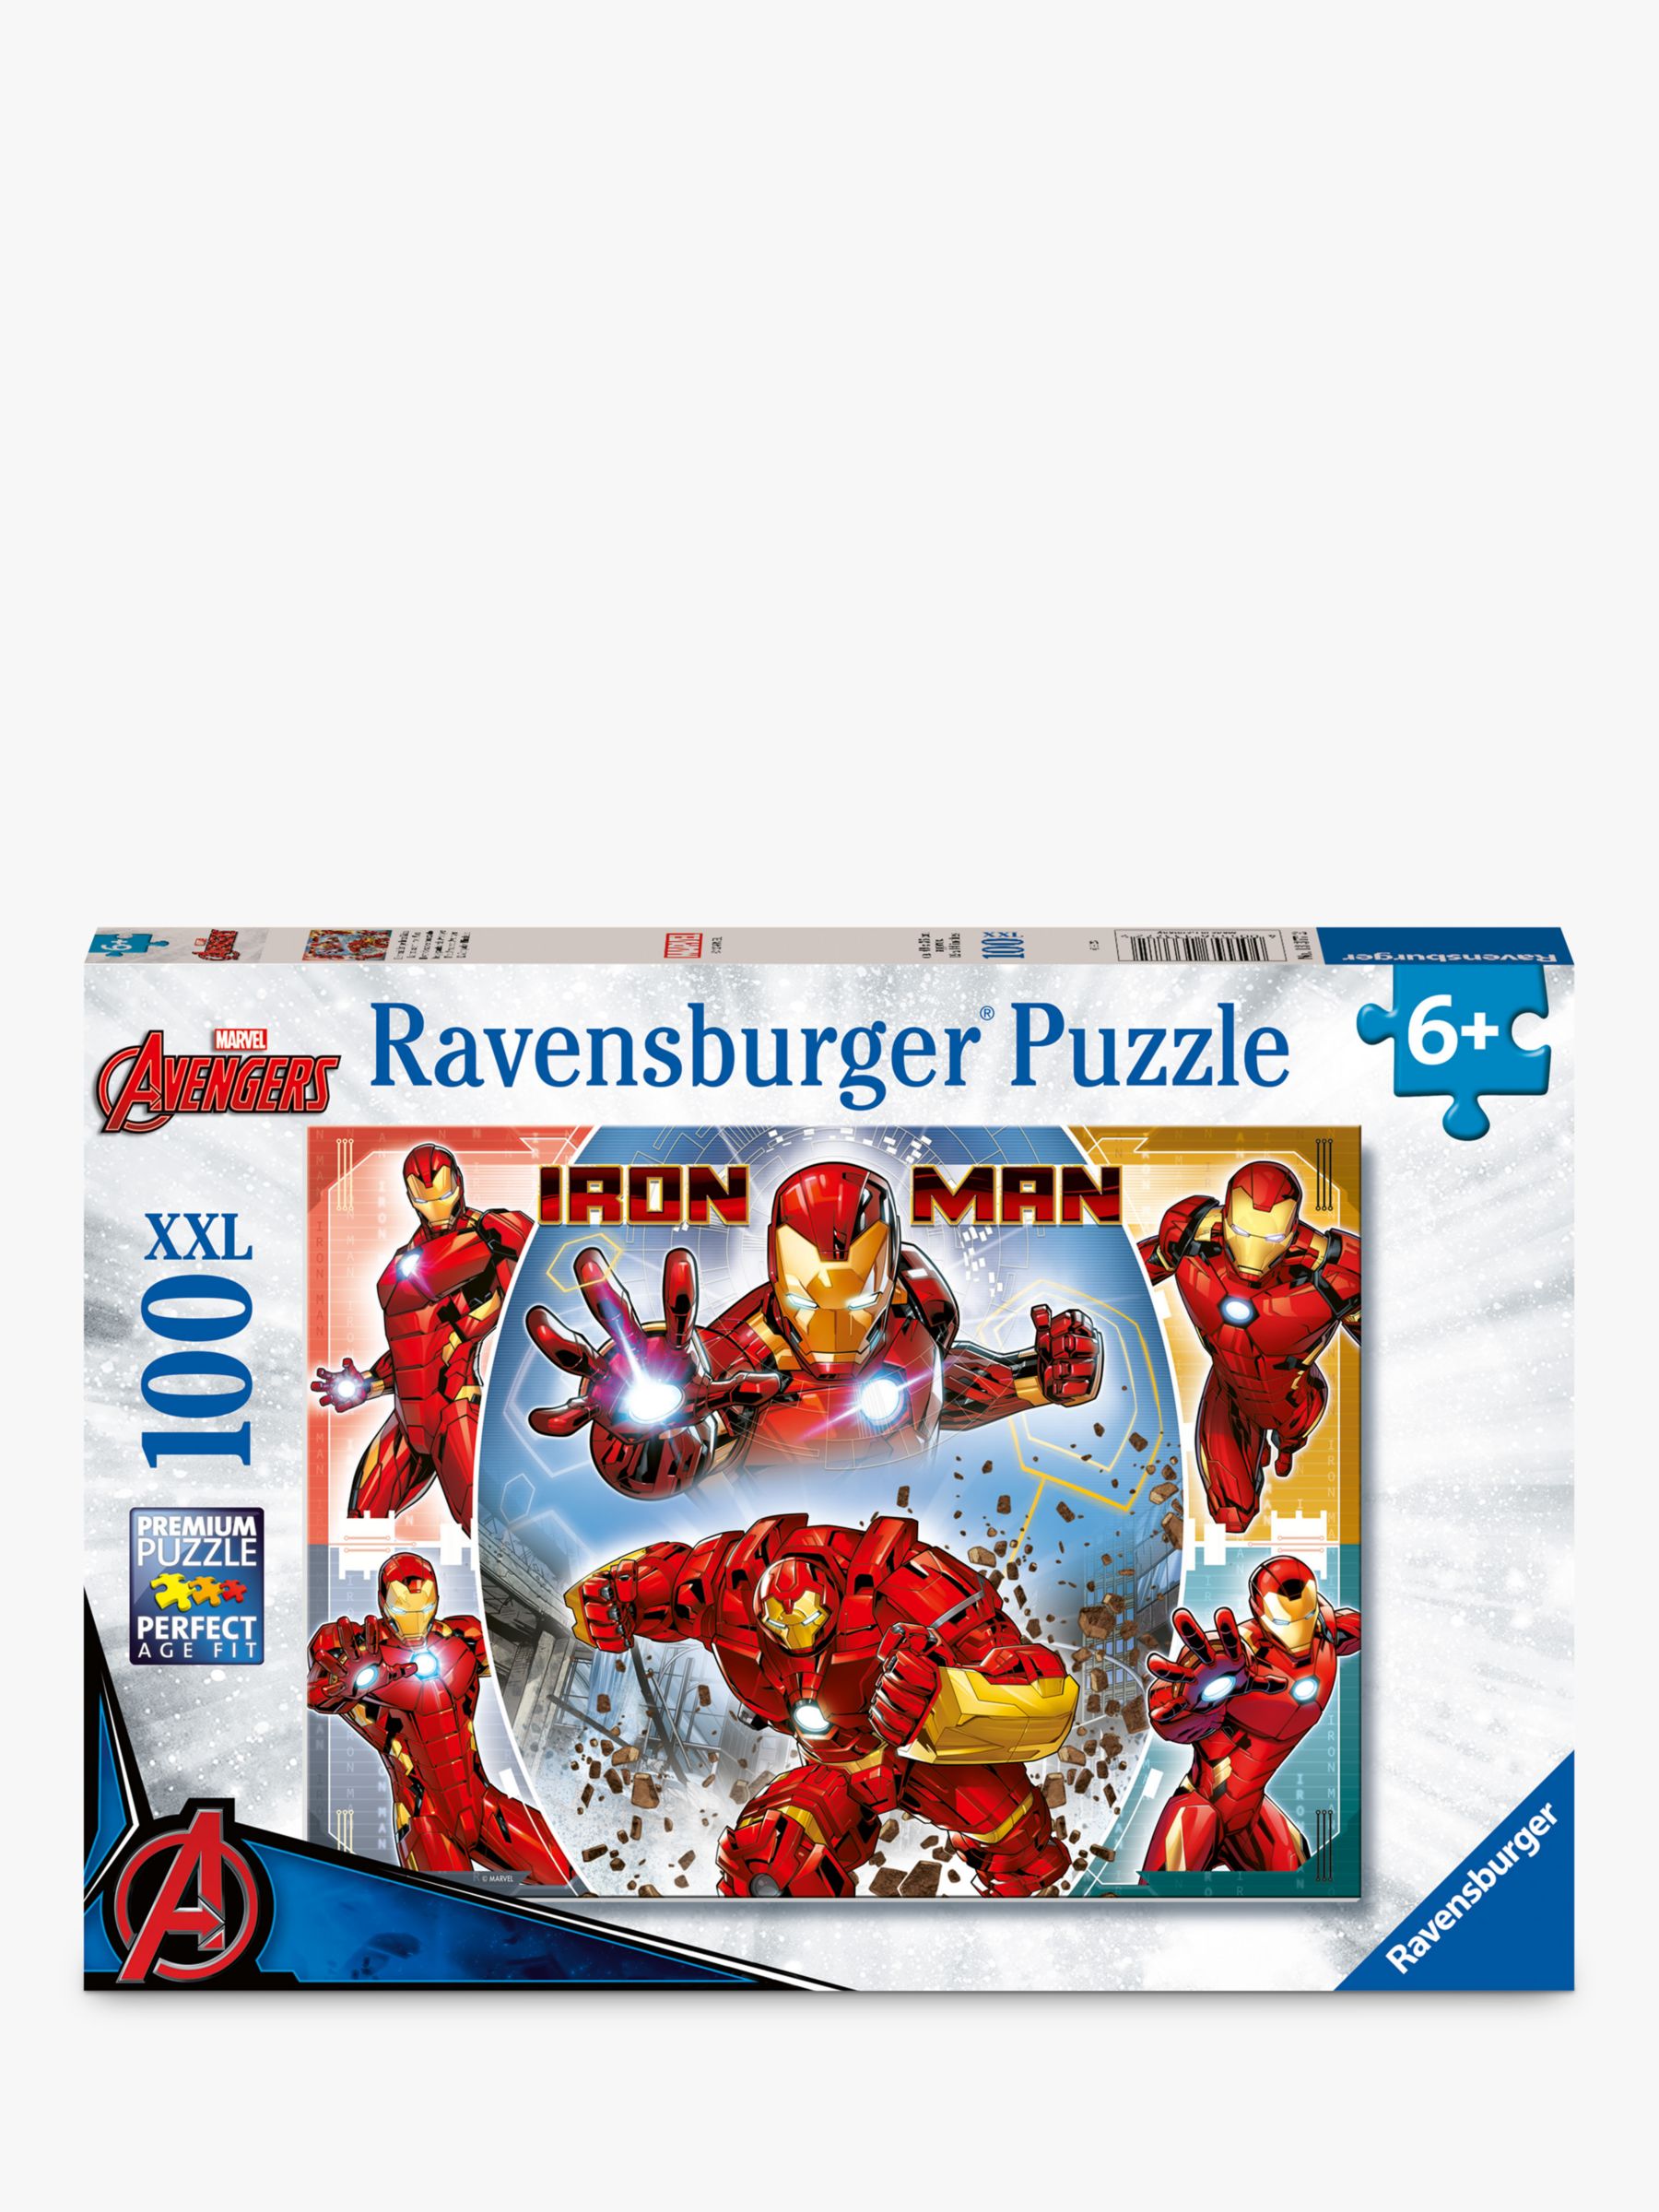 Puzzle Avengers de 100 pièces Trefl